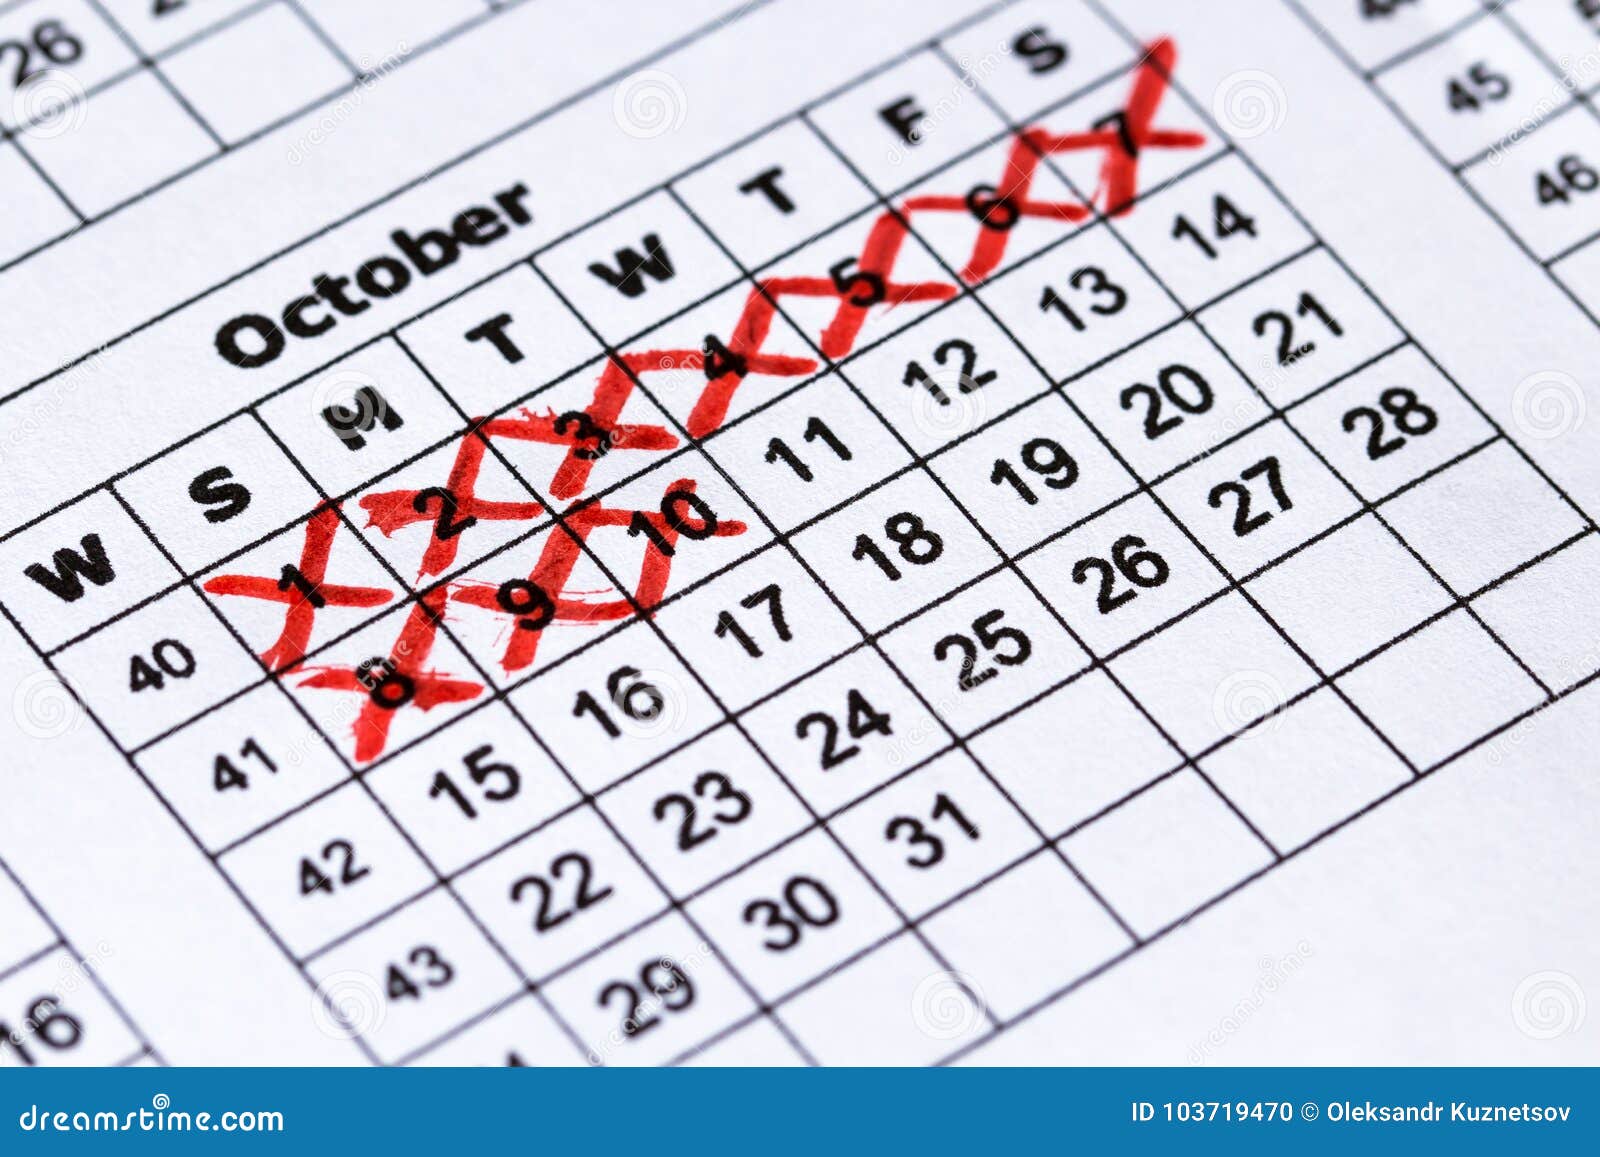 Календарь где можно отмечать. Календарь чтобы зачеркивать дни. Зачеркнутые дни в календаре. Перечеркнутый календарь. Календарь для отметок.